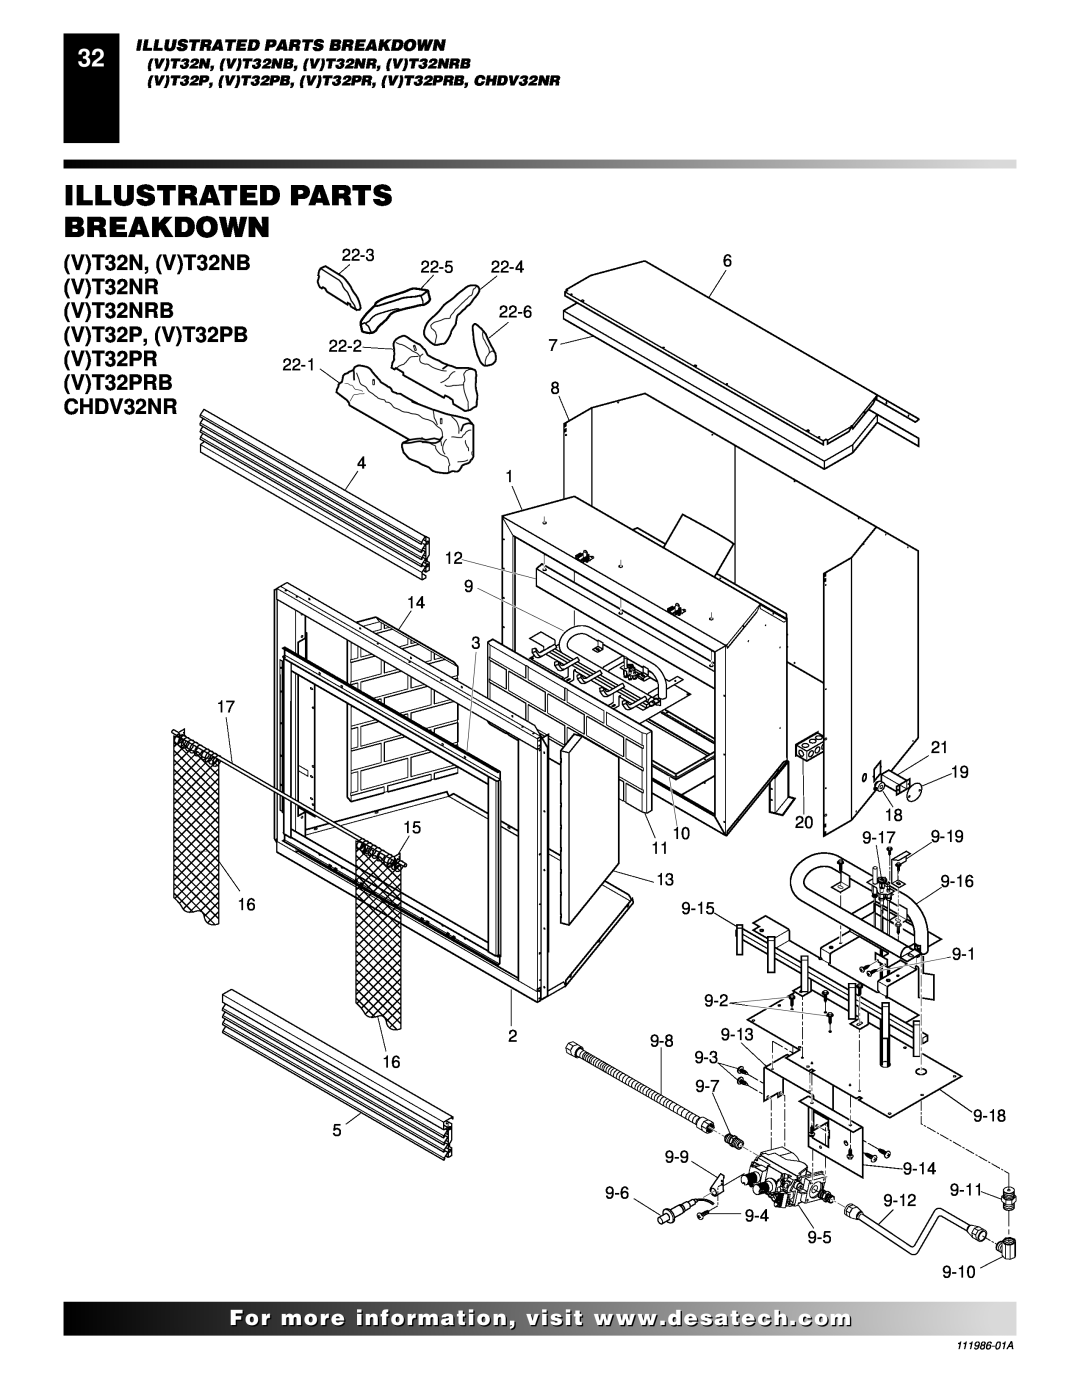 Desa Illustrated Parts Breakdown, VT32N, VT32NB, VT32NRB, VT32P, VT32PB, VT32PRB, CHDV32NR, For..com 